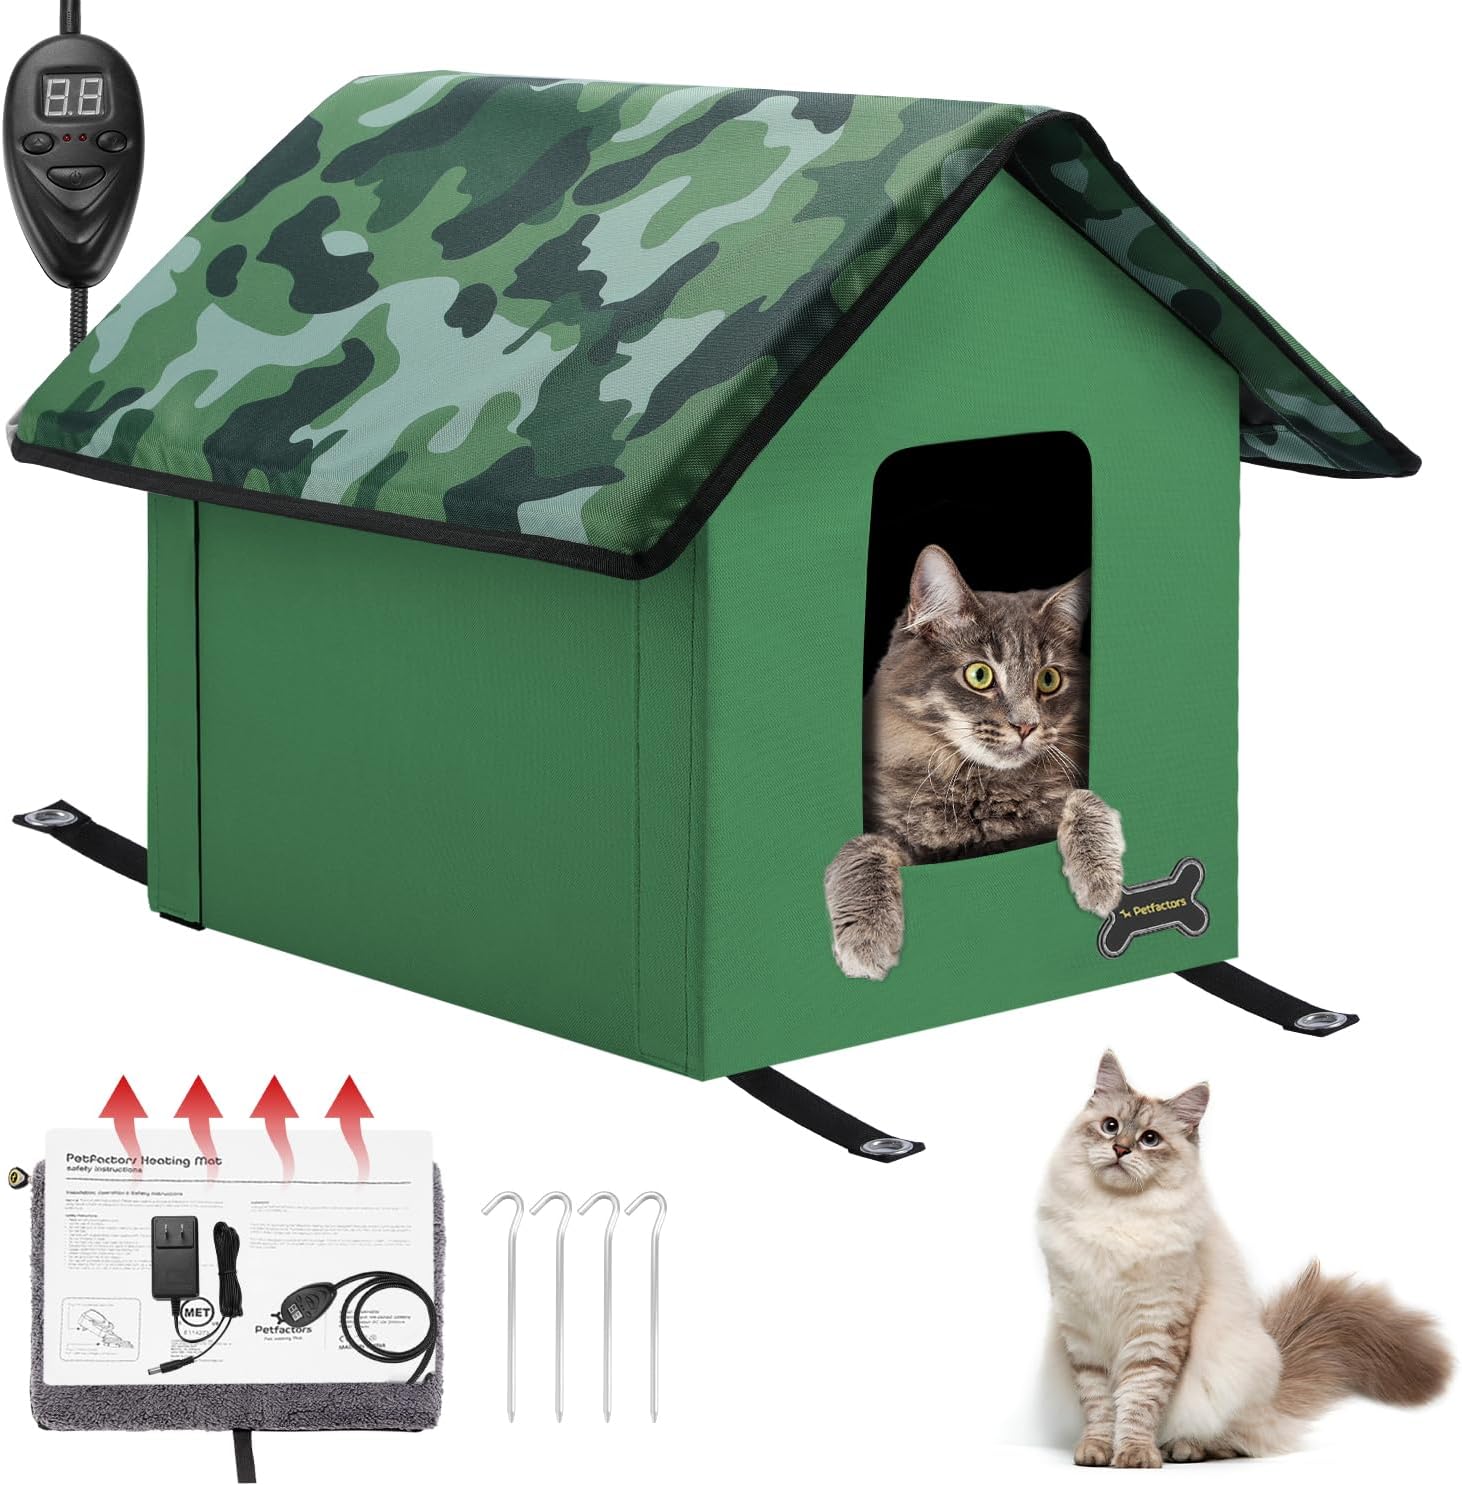 Petfactors Outdoor/Indoor Heated Cat House